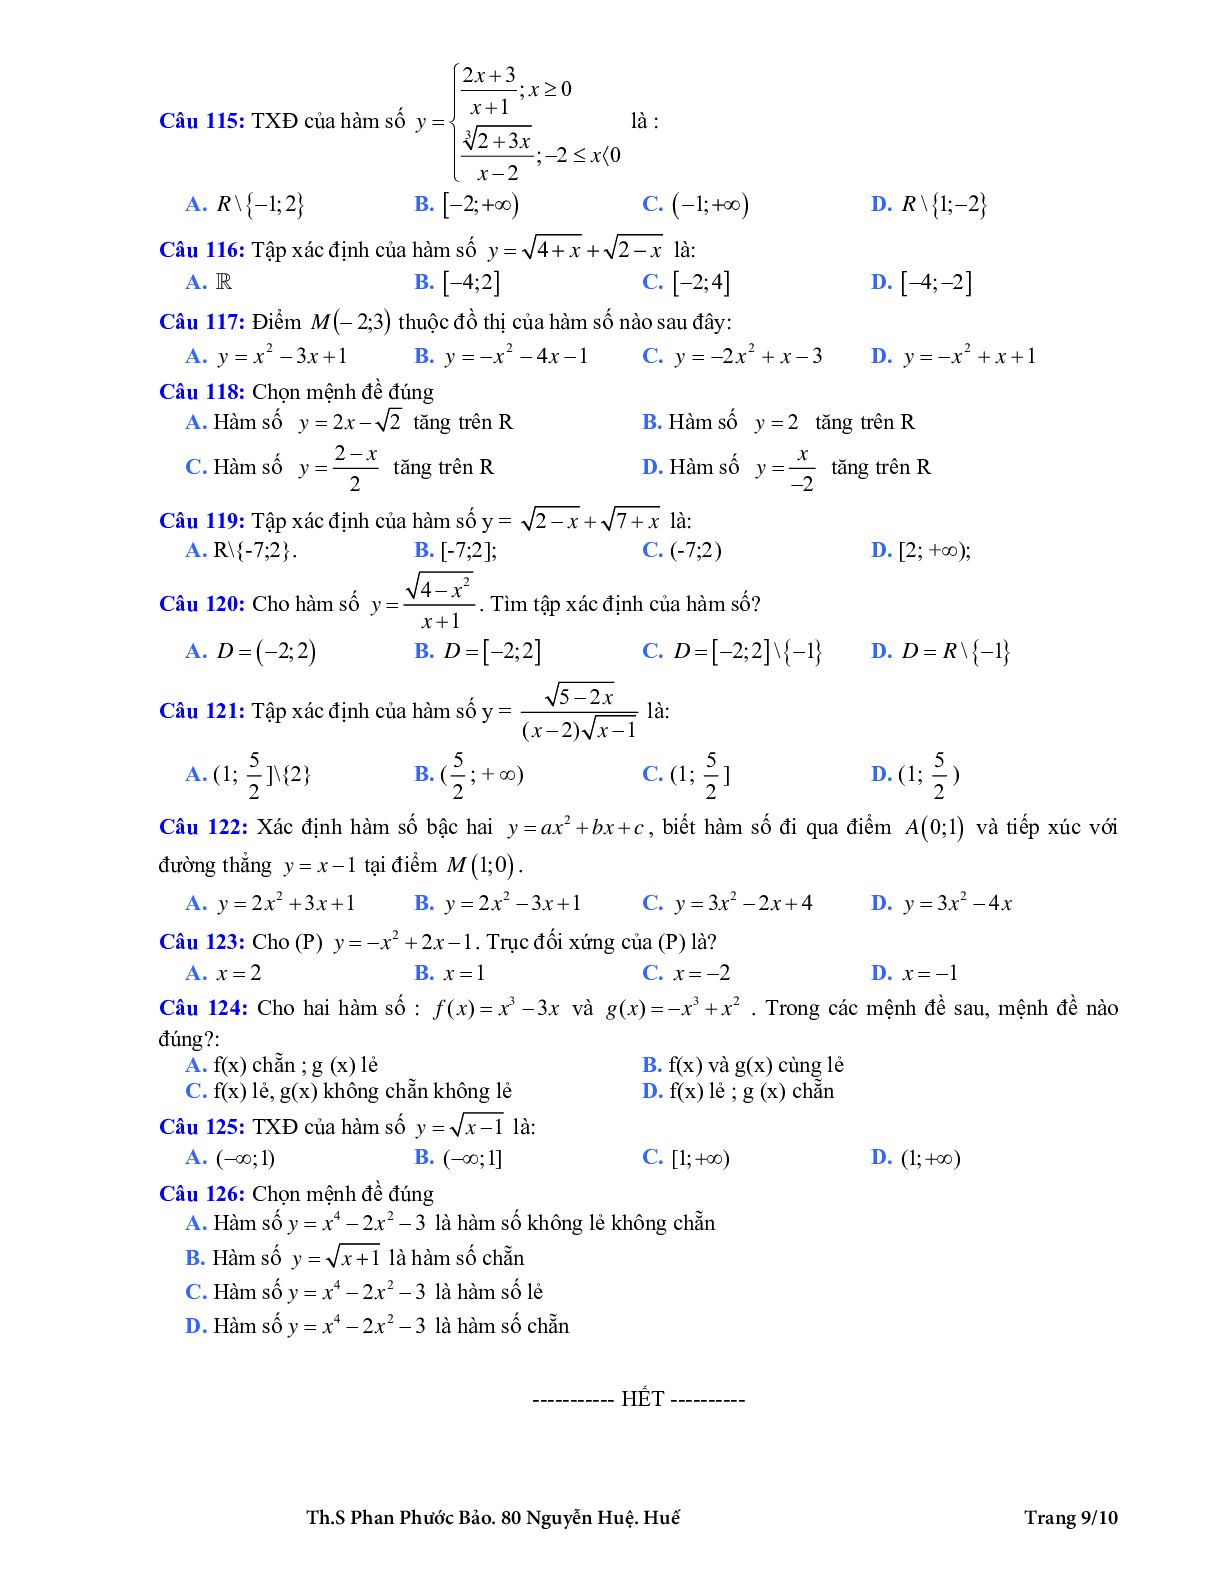 126 bài tập trắc nghiệm hàm số bậc nhất và hàm số bậc hai có đáp án (trang 9)